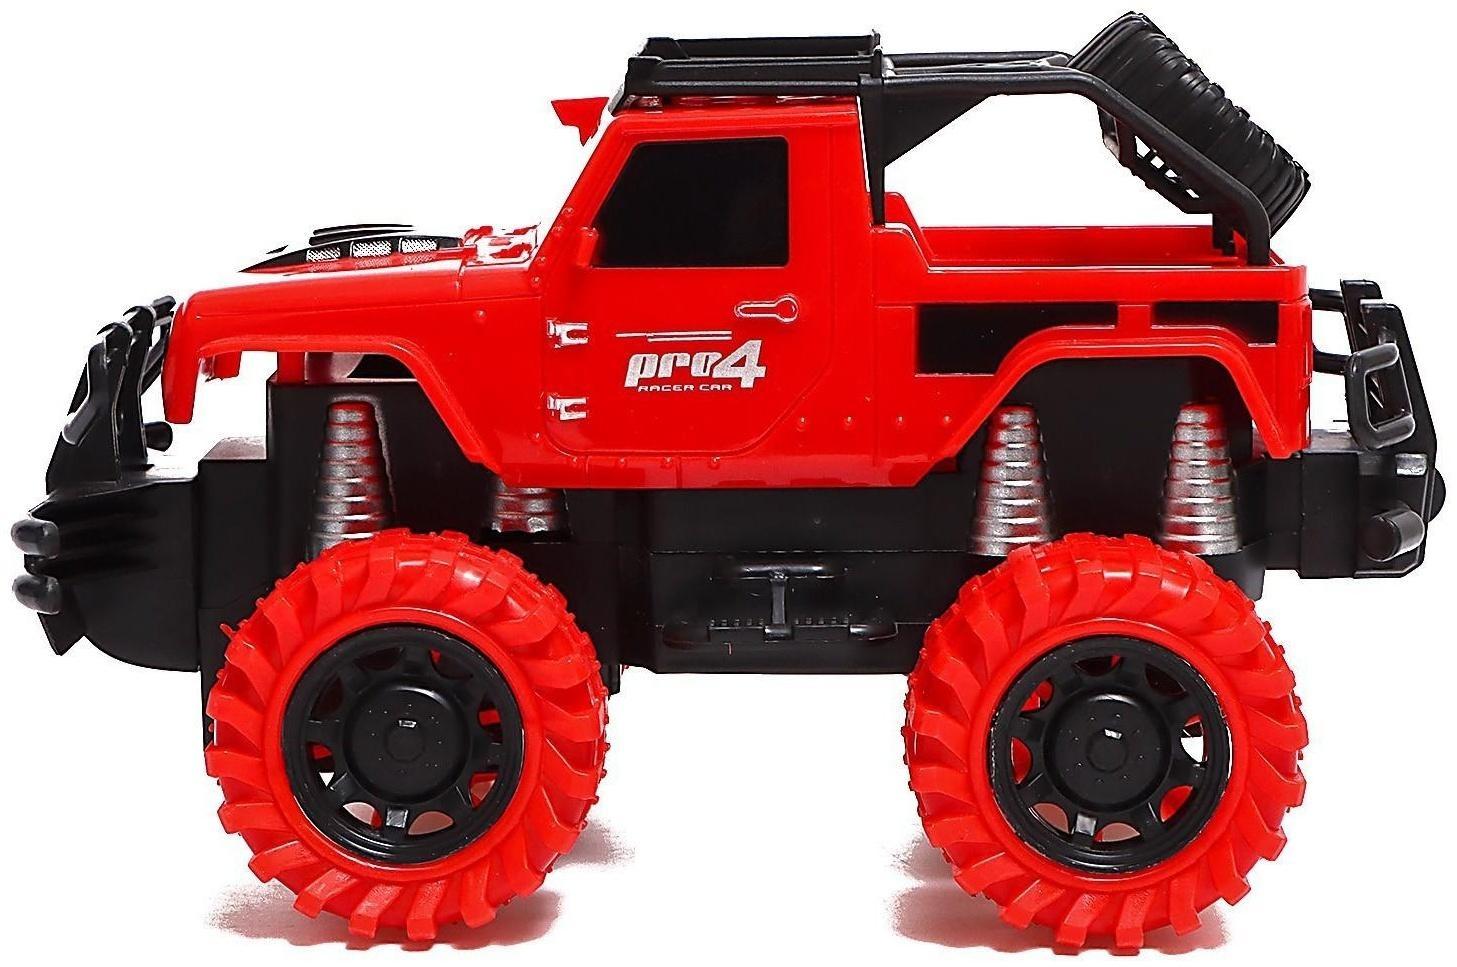 Джип радиоуправляемый Truck, масштаб 1:18, педали и руль, работает от аккумулятора, цвет красный